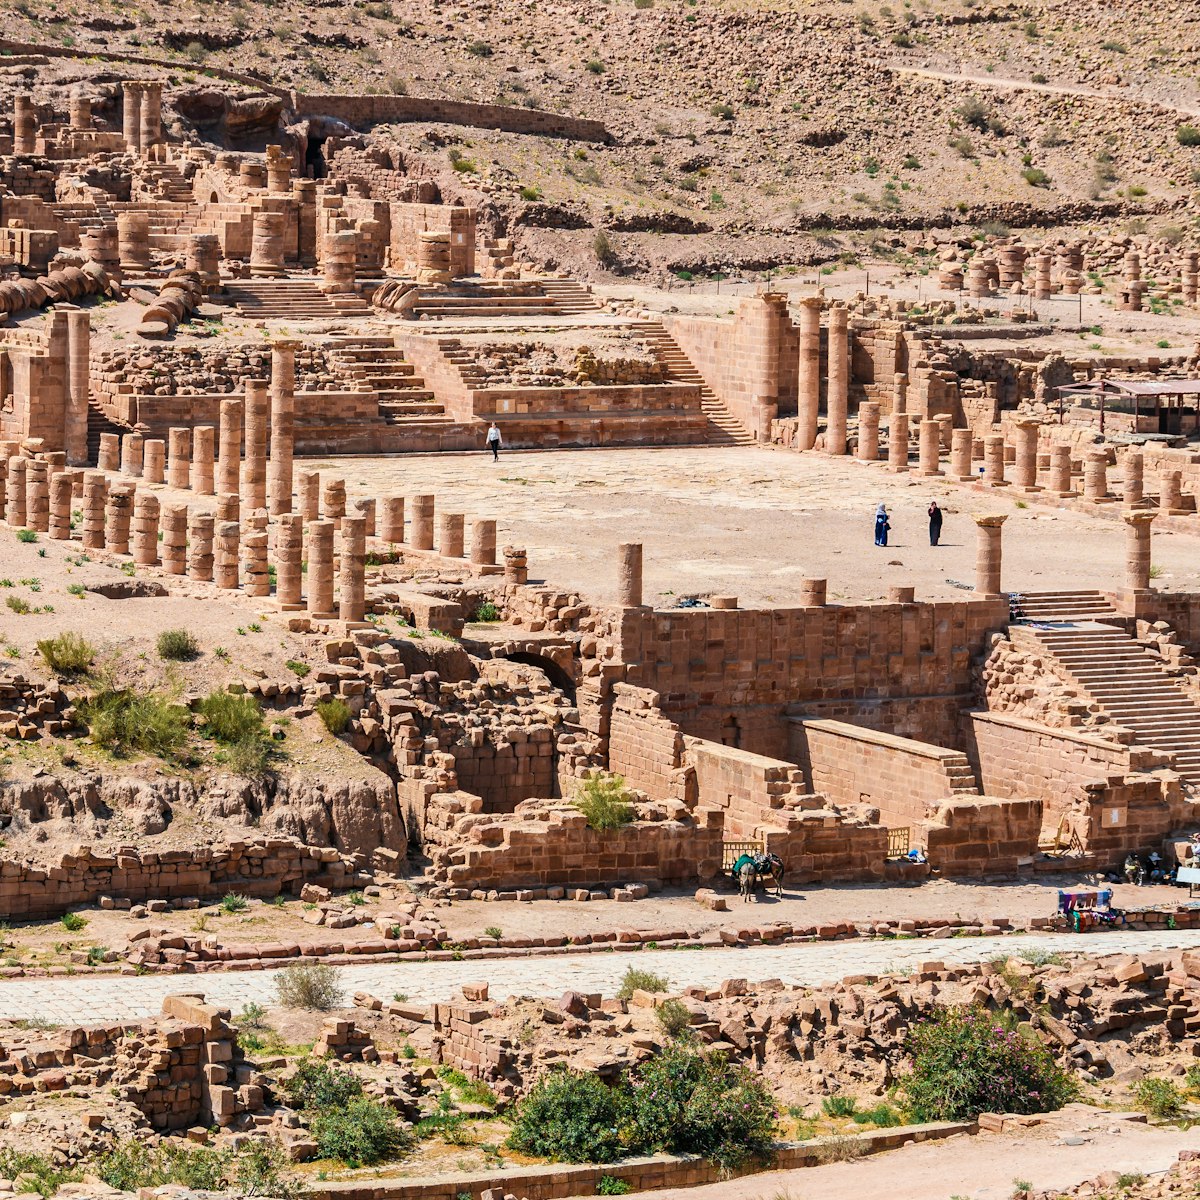 The Great Temple in Petra, Jordan.